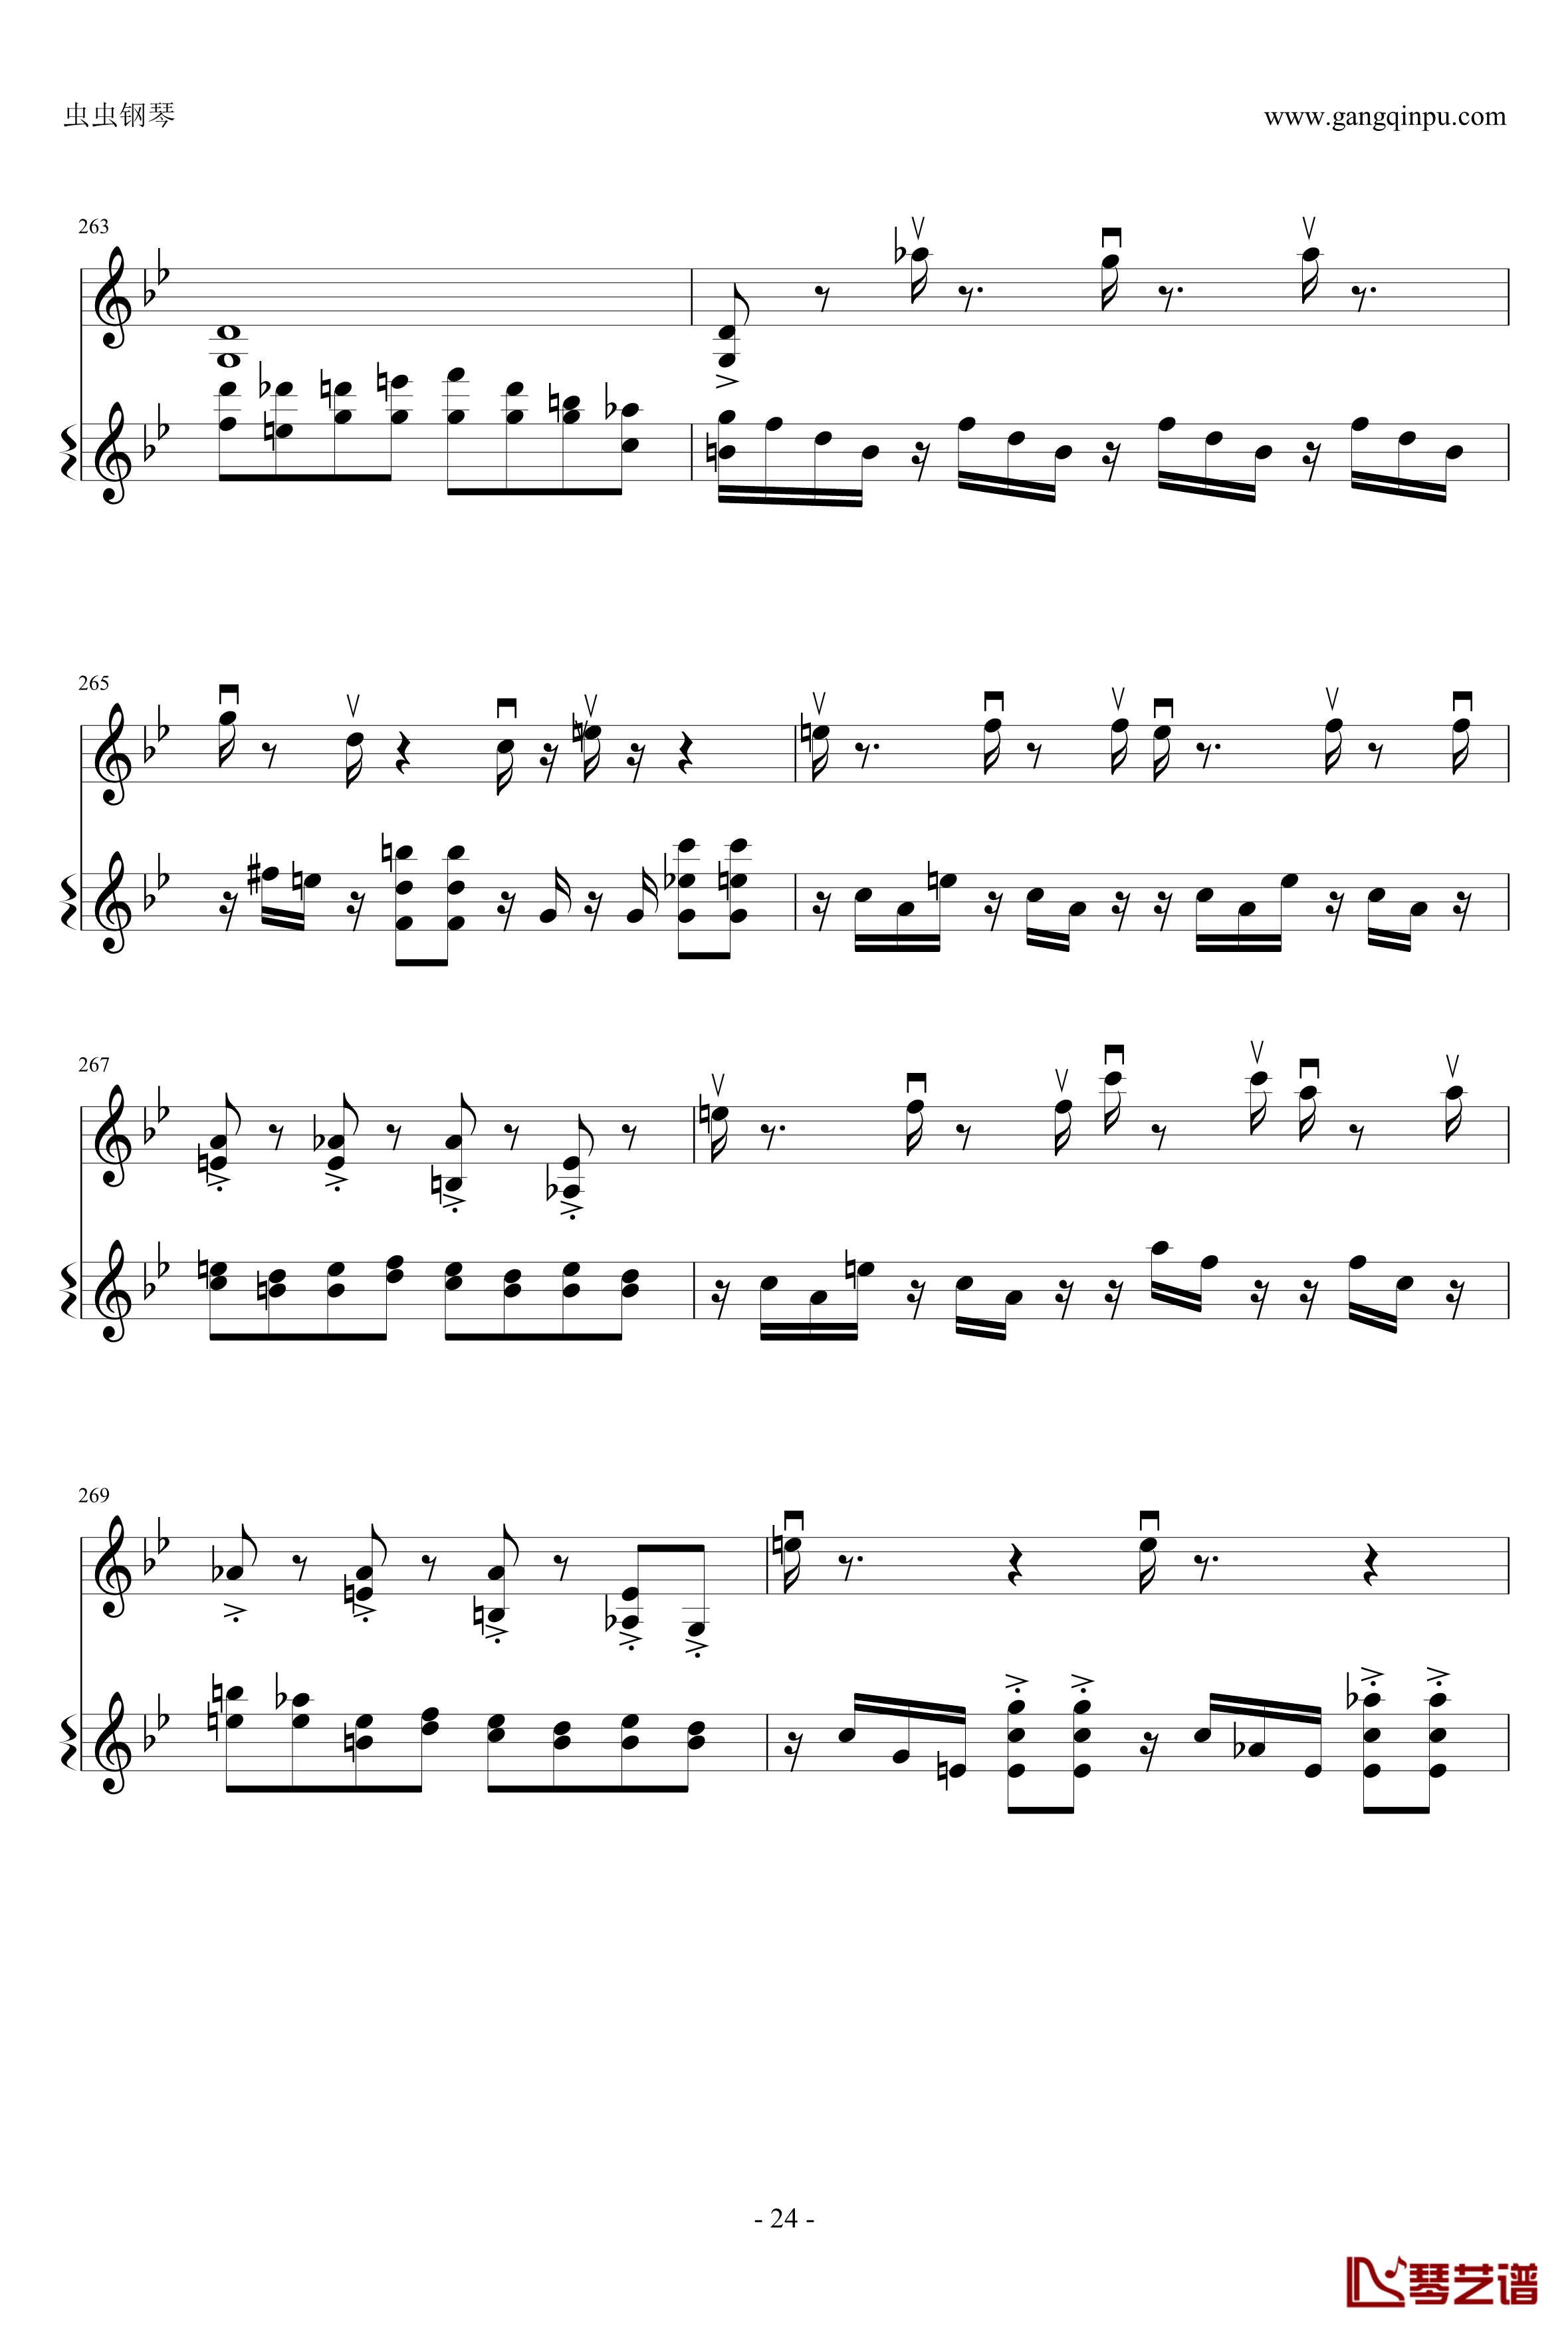 意大利国歌钢琴谱-变奏曲修改版-DXF24